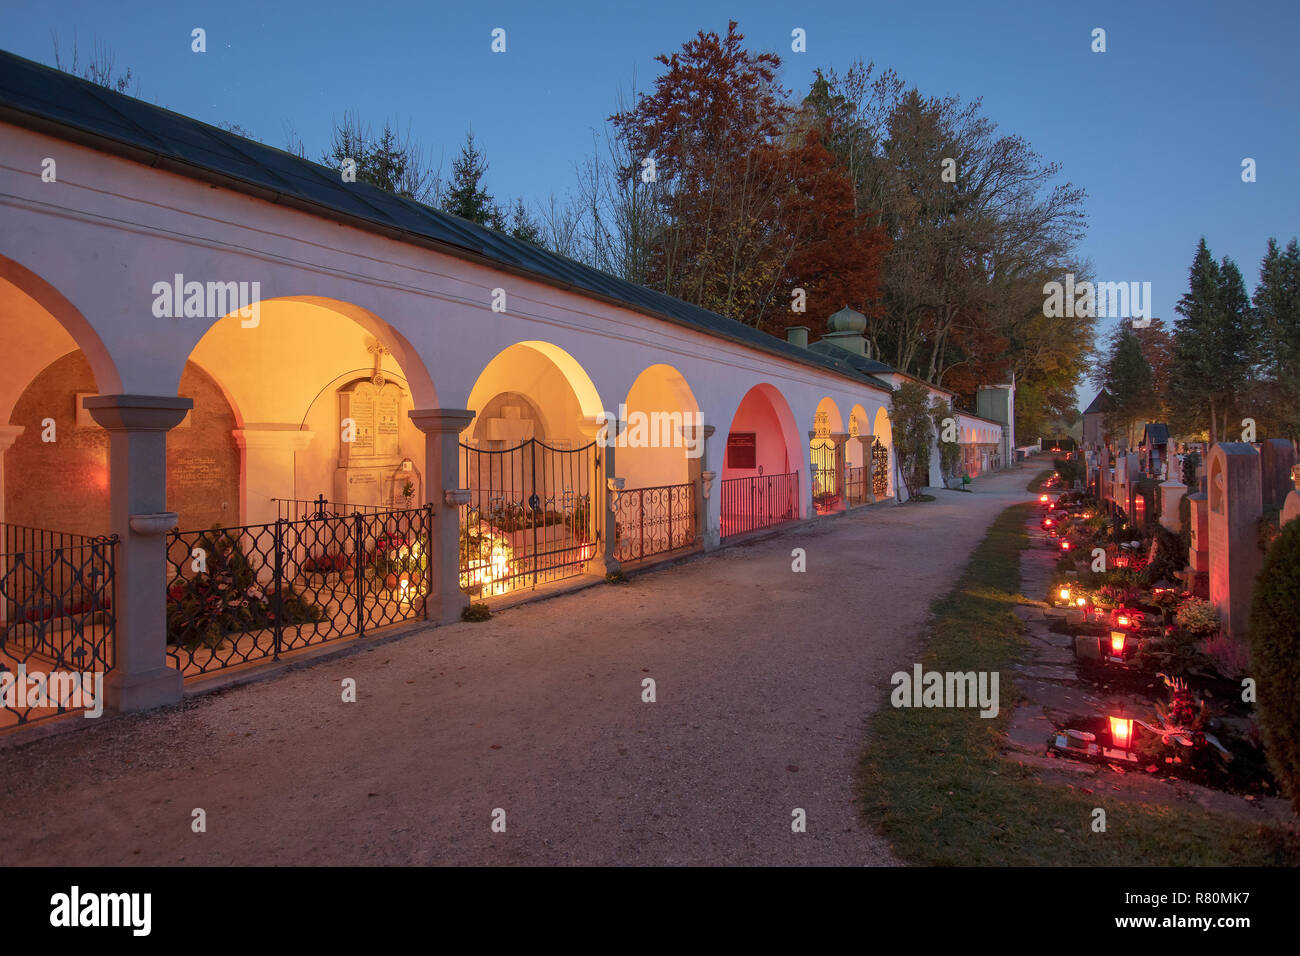 Cimetière dans le village Teisendorf à All Saints Day avec des bougies placées en l'honneur de parents décédés. La Haute-bavière, Allemagne Banque D'Images